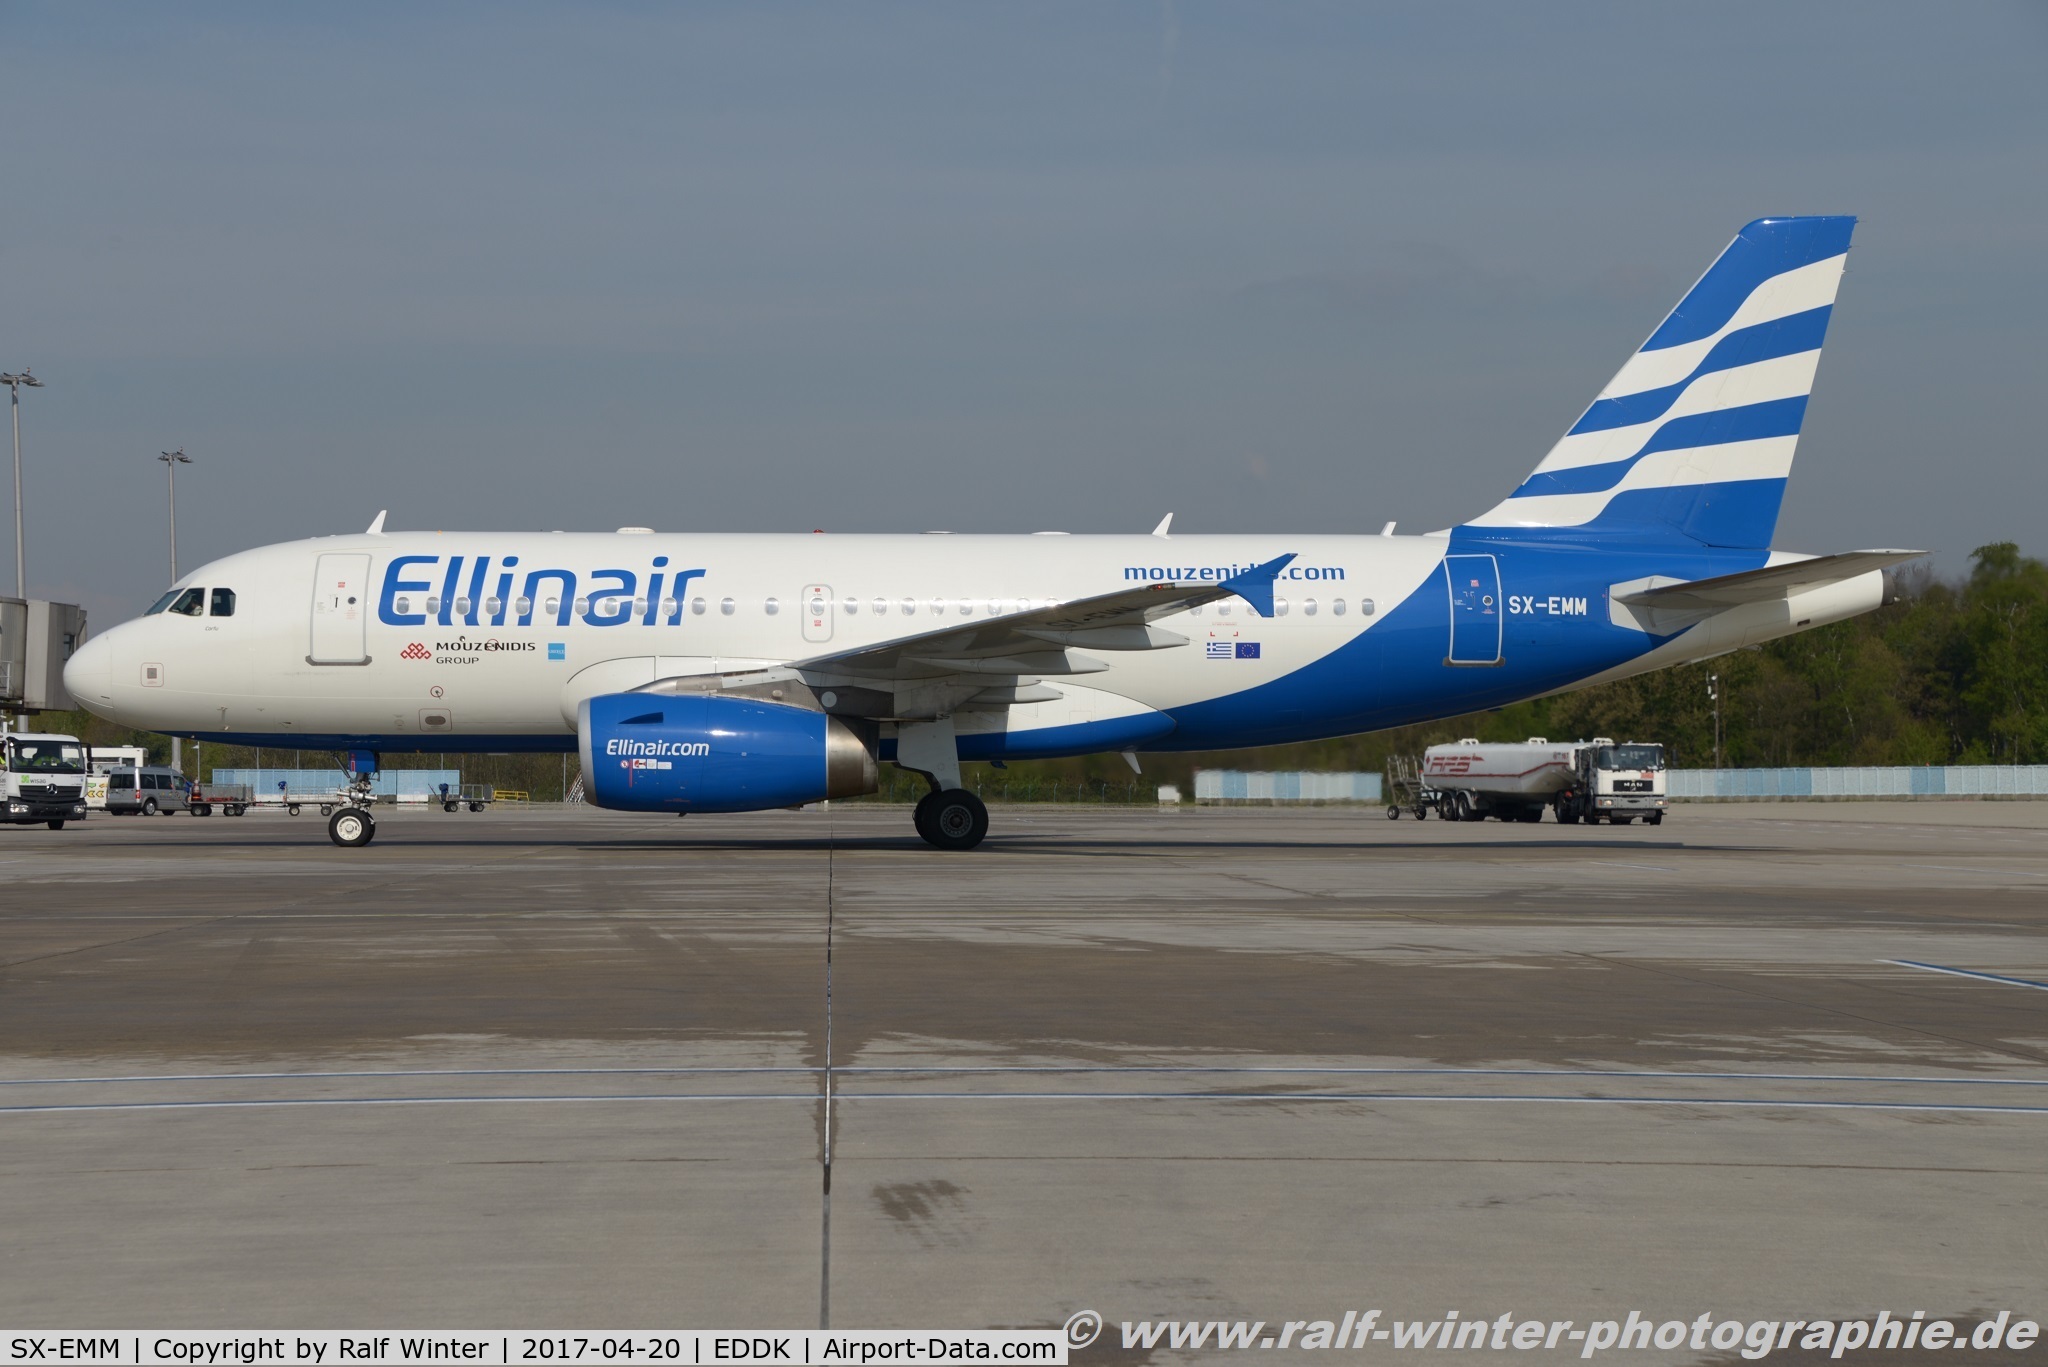 SX-EMM, 2002 Airbus A319-132 C/N 1703, Airbus A319-132 - EL ELB Ellinair 'Corfu' - 1703 - SX-EMM - 20.04.2017 - CGN